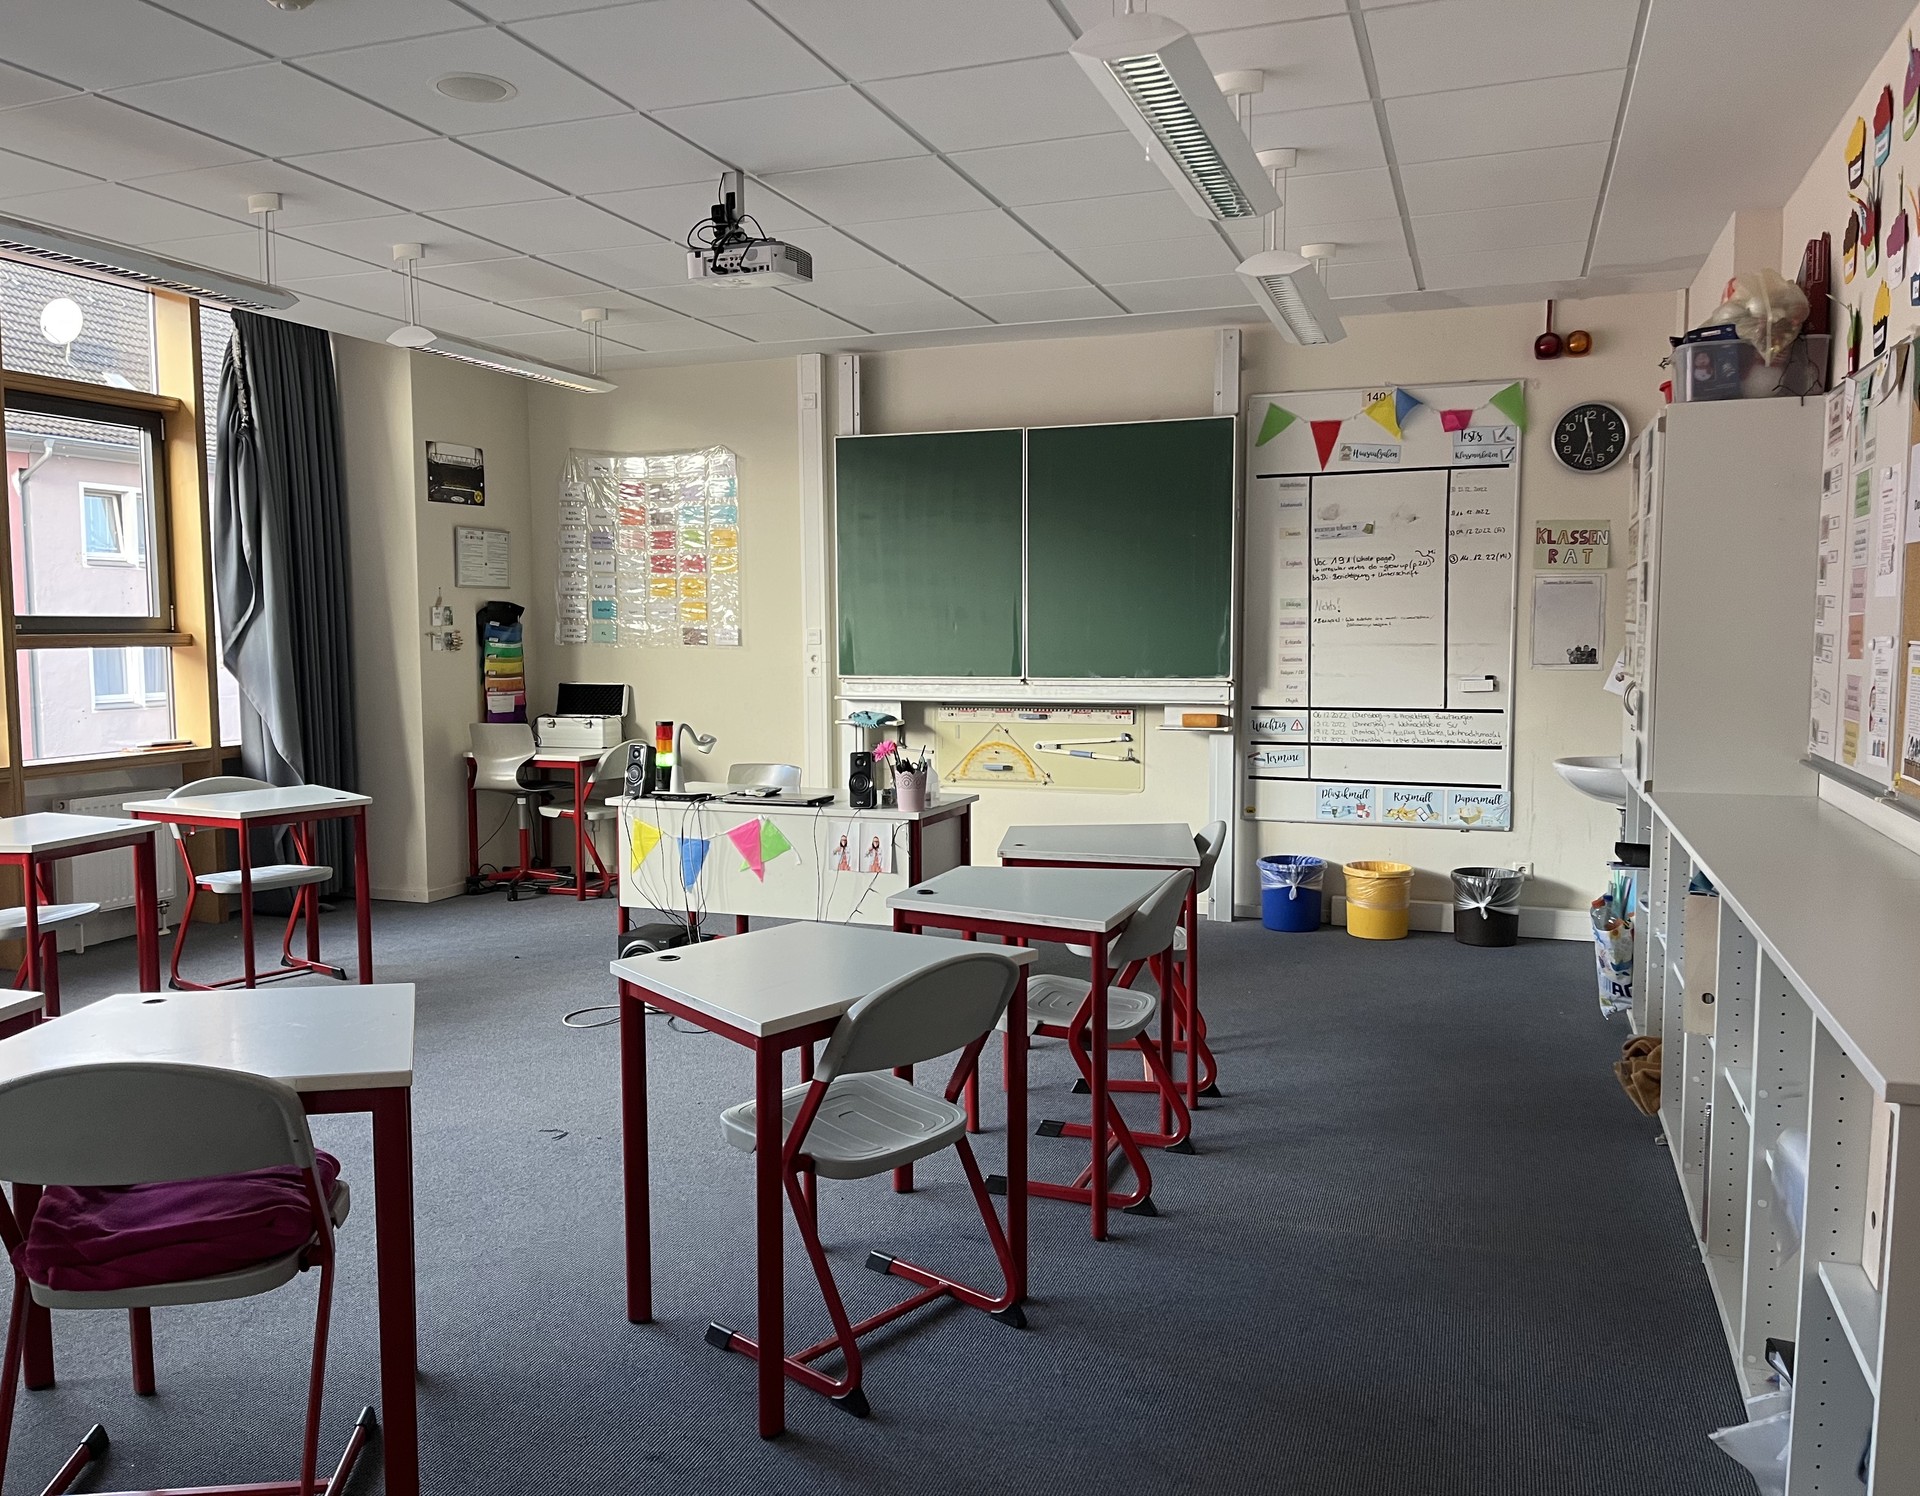 Bild eines Klassenraums